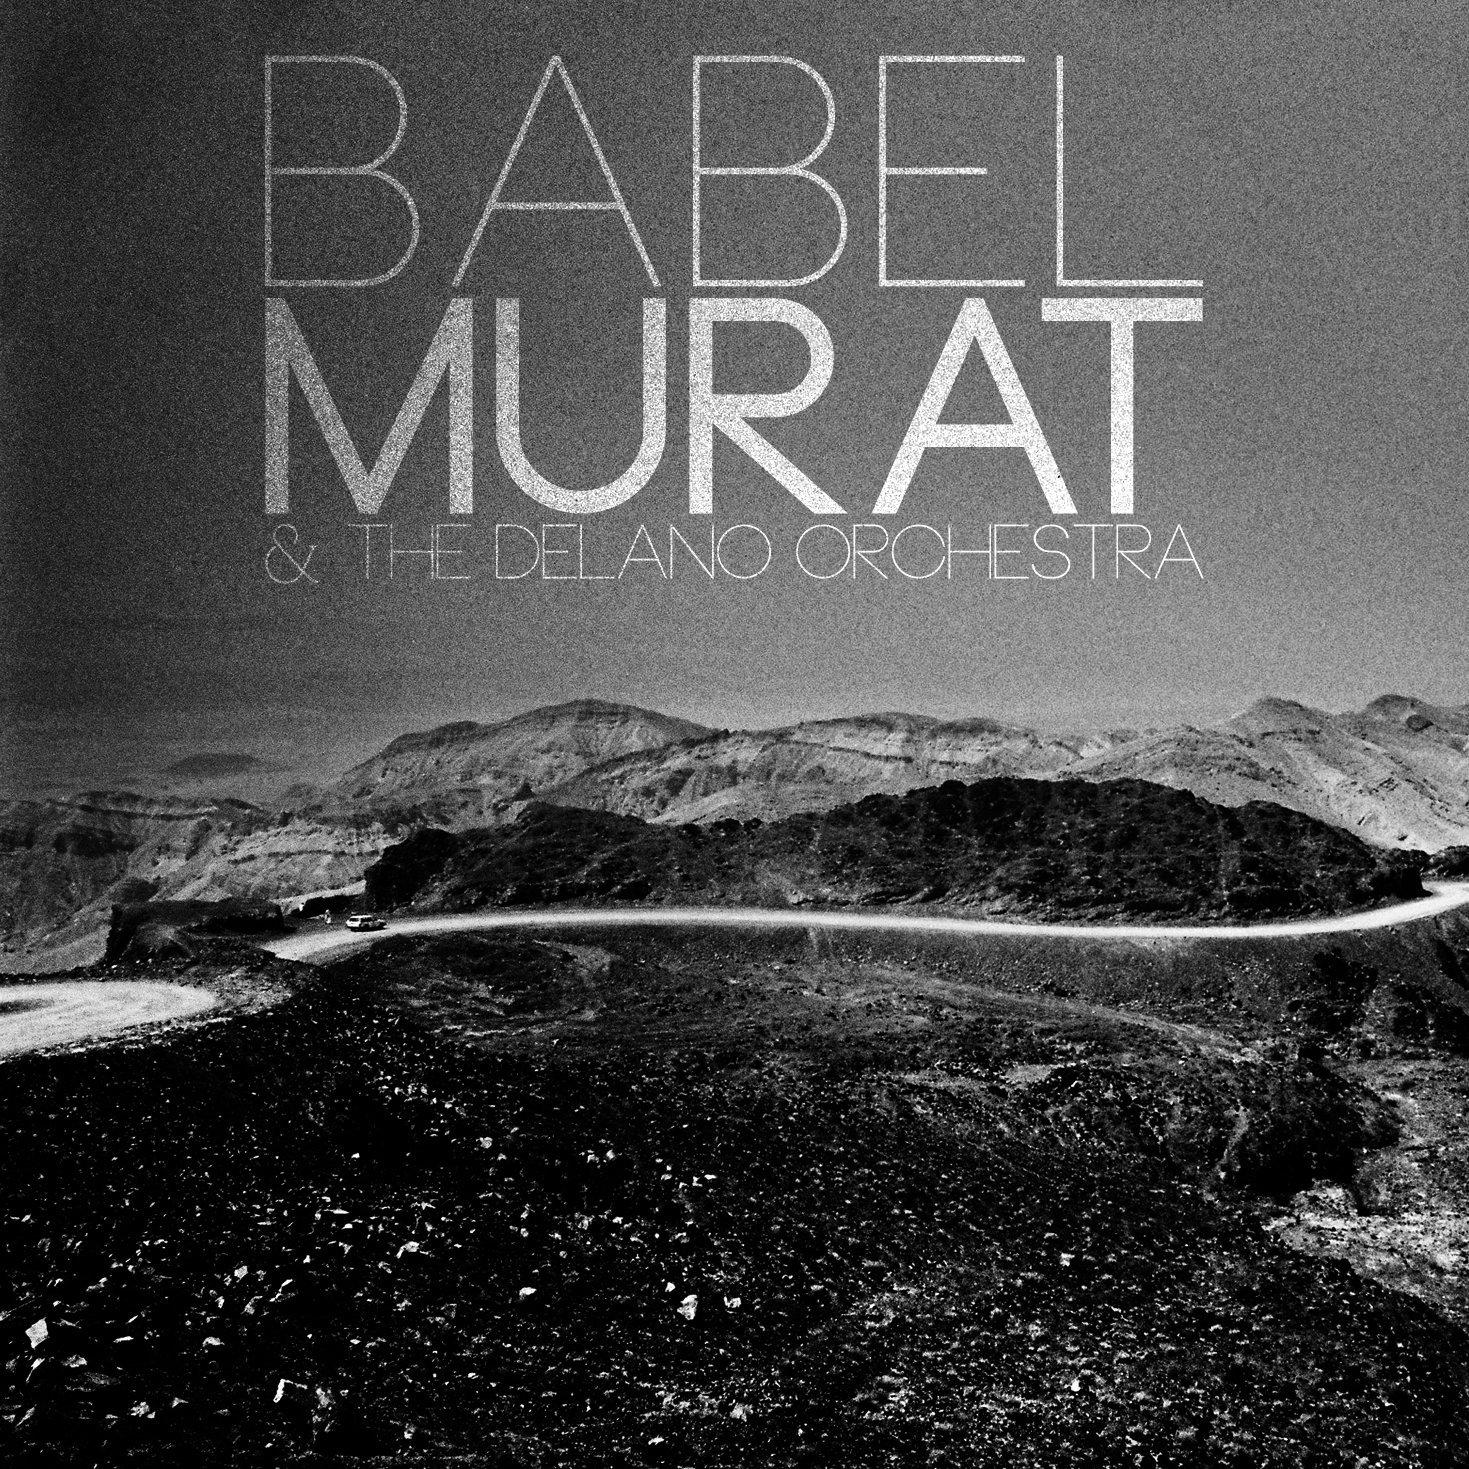 Murat & The Delano Orchestra - Babel